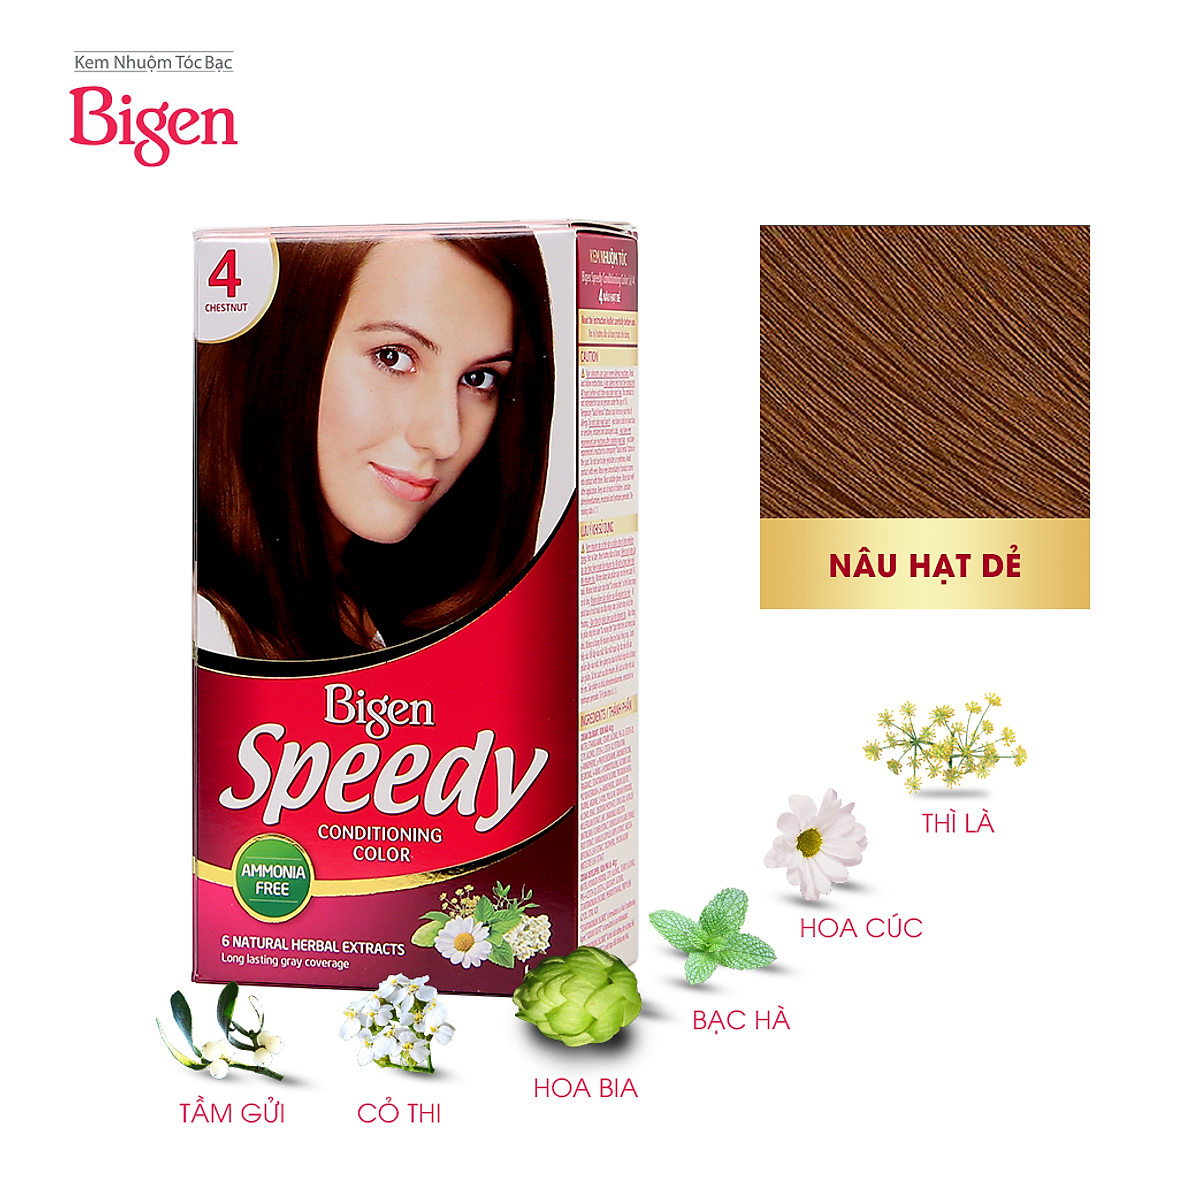 Thuốc nhuộm tóc Bigen Speedy số 4 là sự lựa chọn hoàn hảo cho bạn nếu bạn muốn cải thiện bộ tóc của mình với một màu sáng, tươi mới và tự tin! Sử dụng sản phẩm này, bạn sẽ có được một bộ tóc thiệt là đẹp và sáng bóng, bất kể loại tóc nào bạn có.